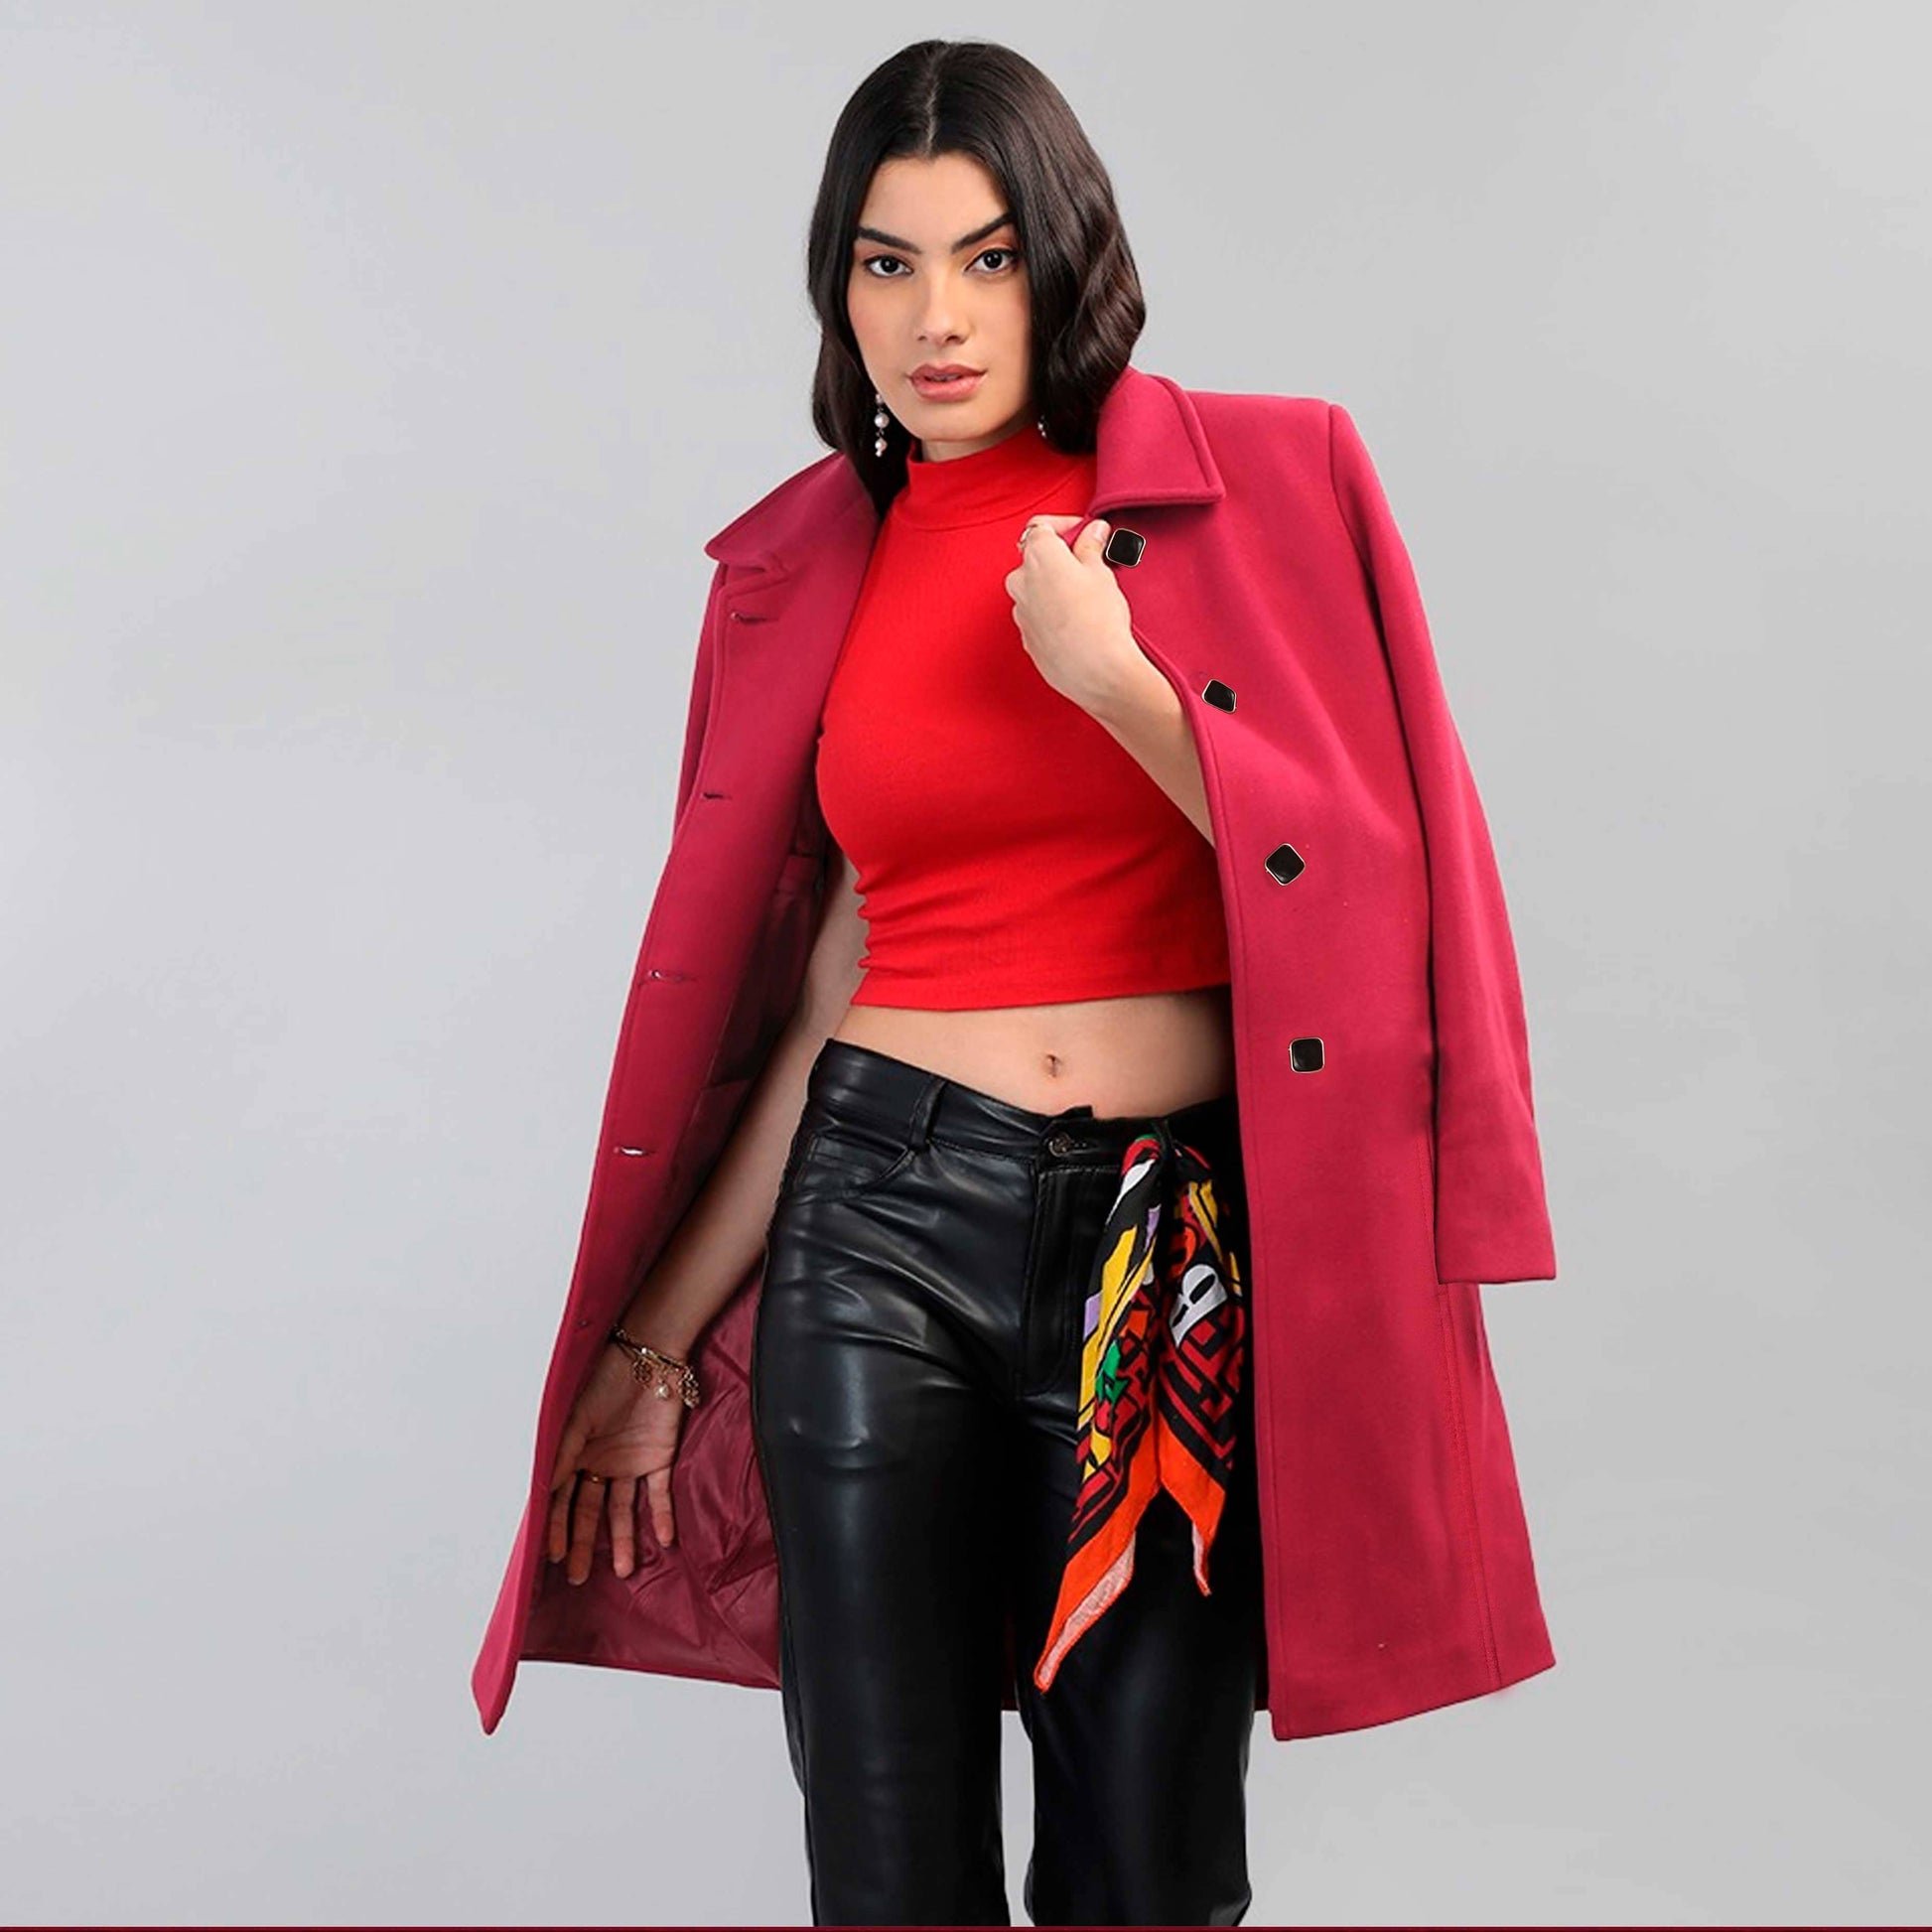 Classic Fashion Women's Winter Moroto Outwear Long Coat Women's Jacket First Choice Shocking pink M 